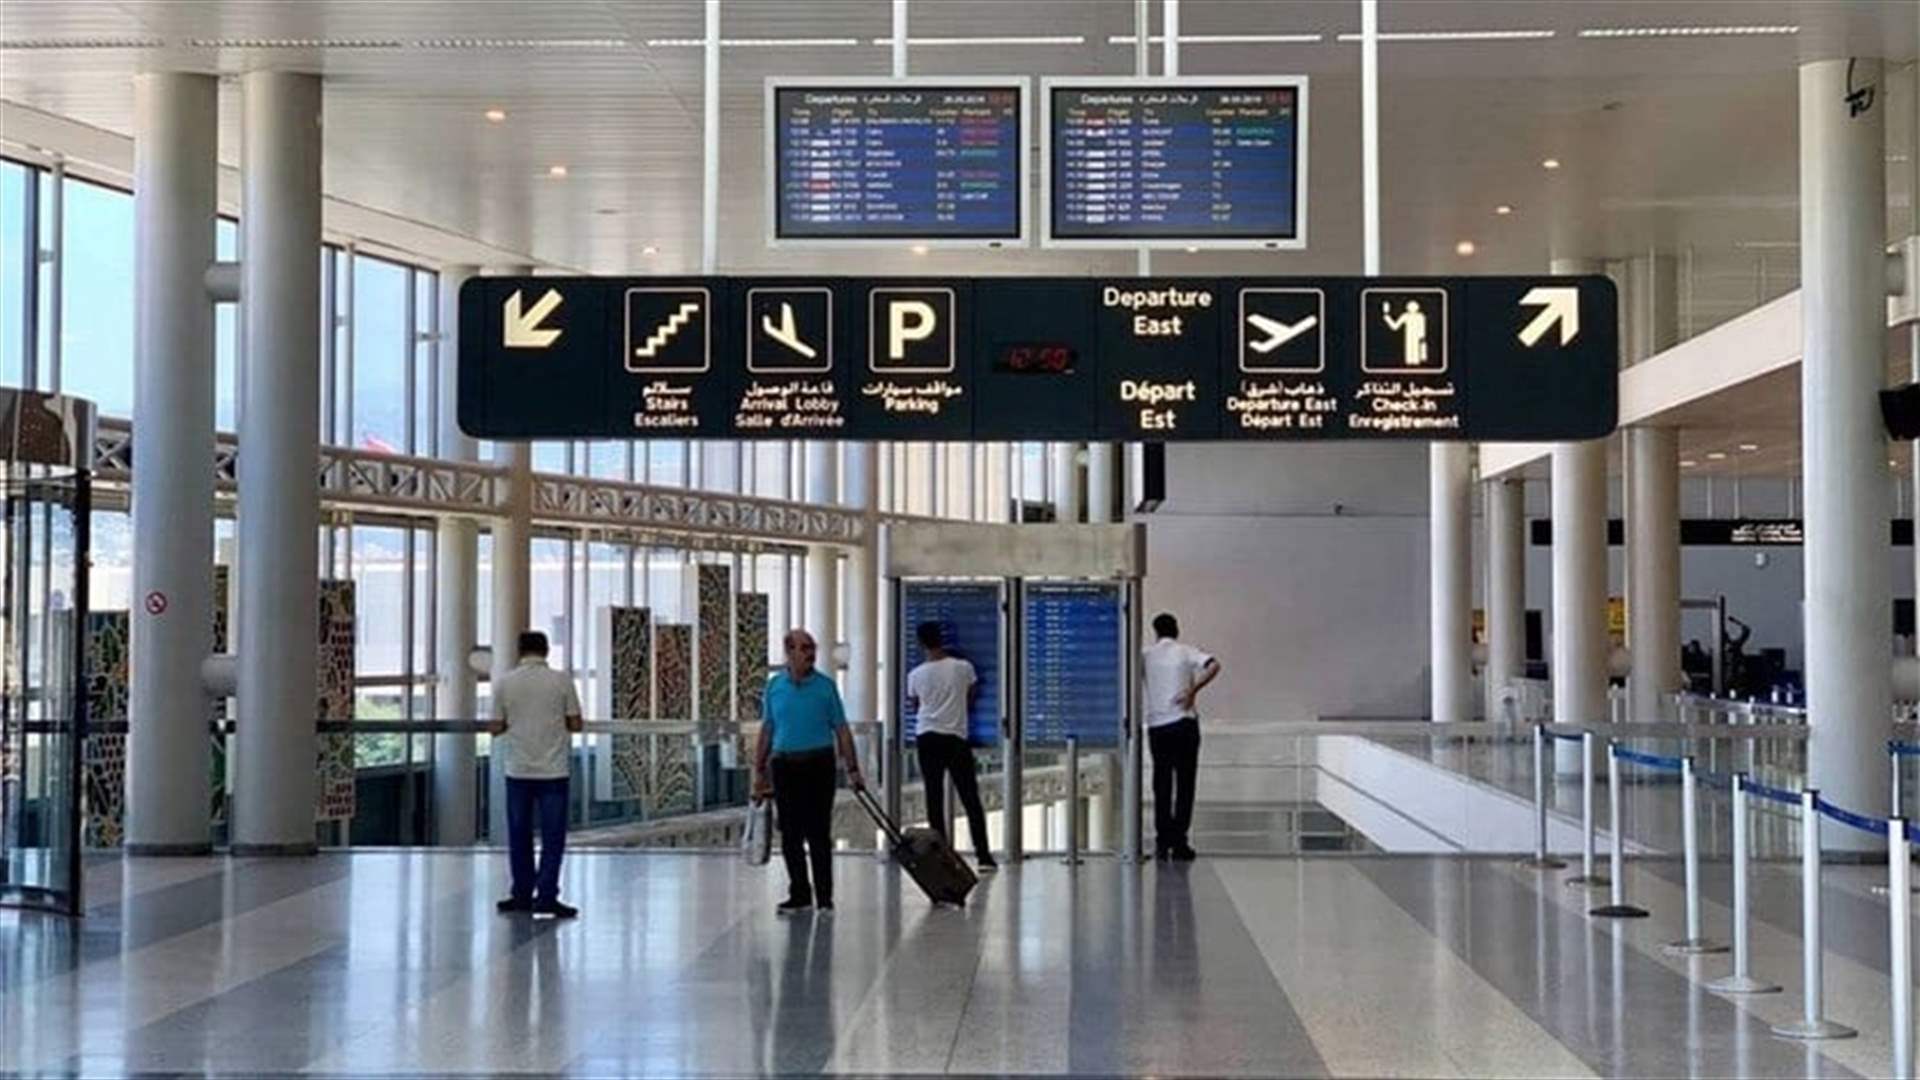 ارتفاع اضافي لعدد المسافرين في المطار خلال شباط الفائت